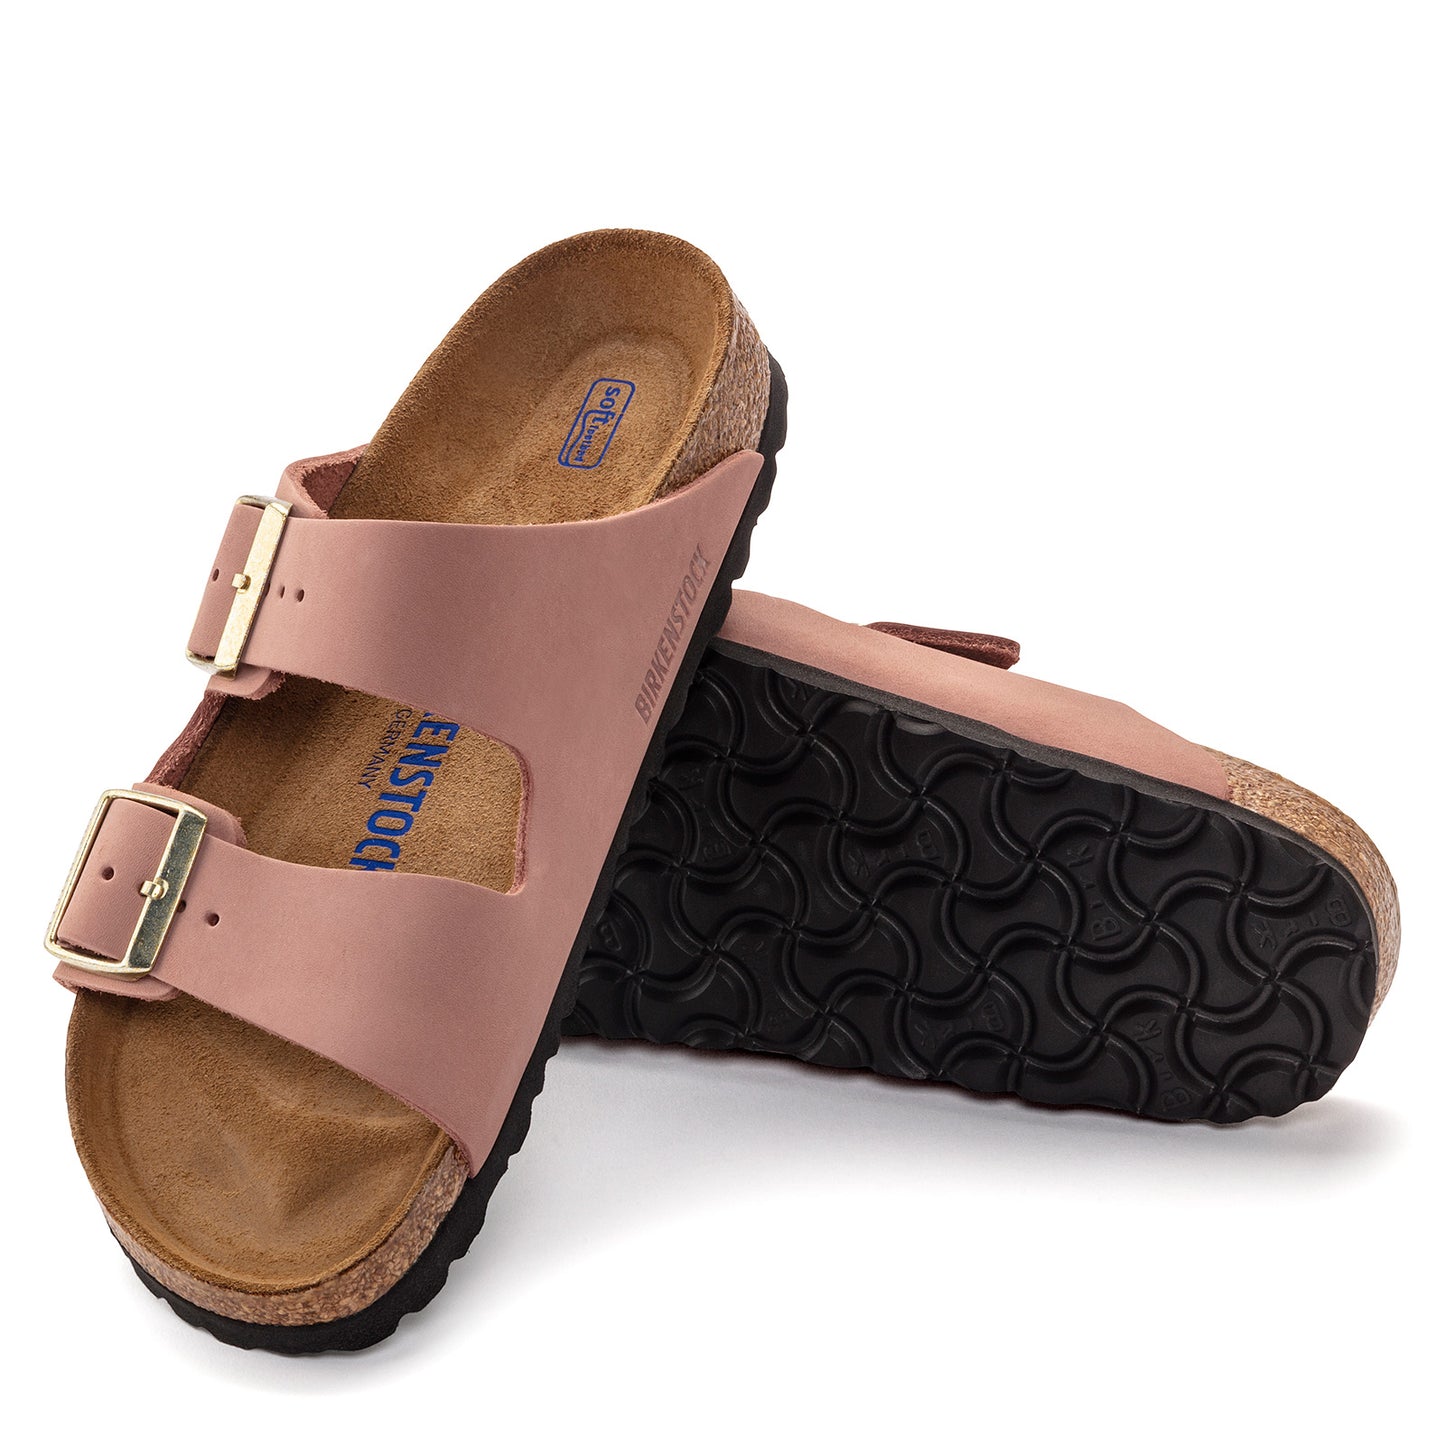 Peltz Shoes  Women's Birkenstock Arizona Soft Footbed Sandal - Narrow Width PINK 1024 219 N